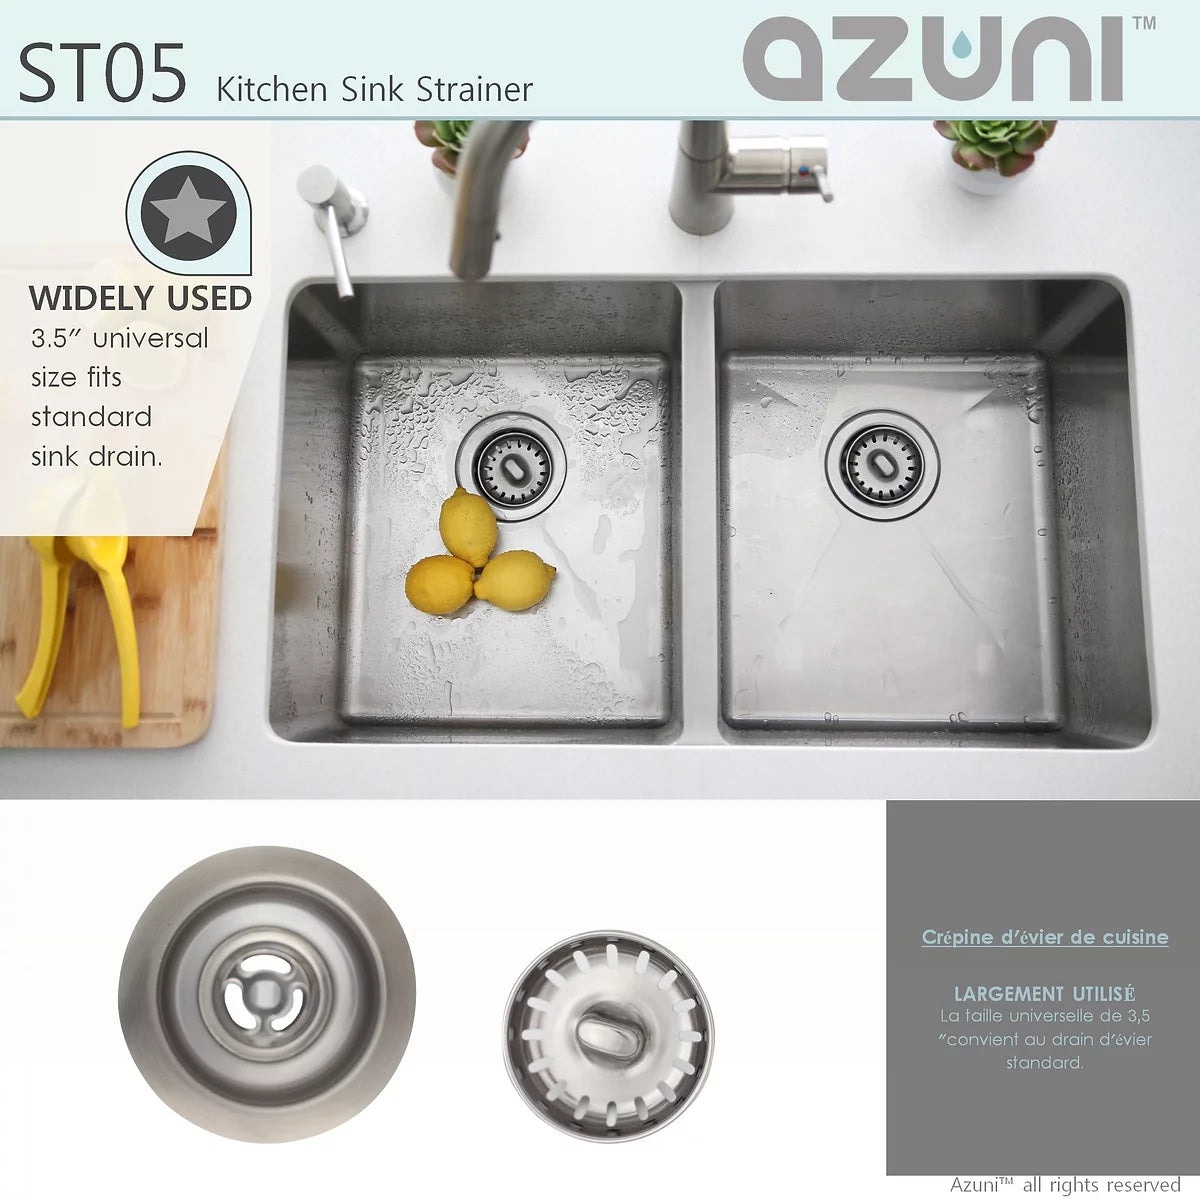 Azuni Standard Stainless Steel Kitchen Sink Strainer ST05